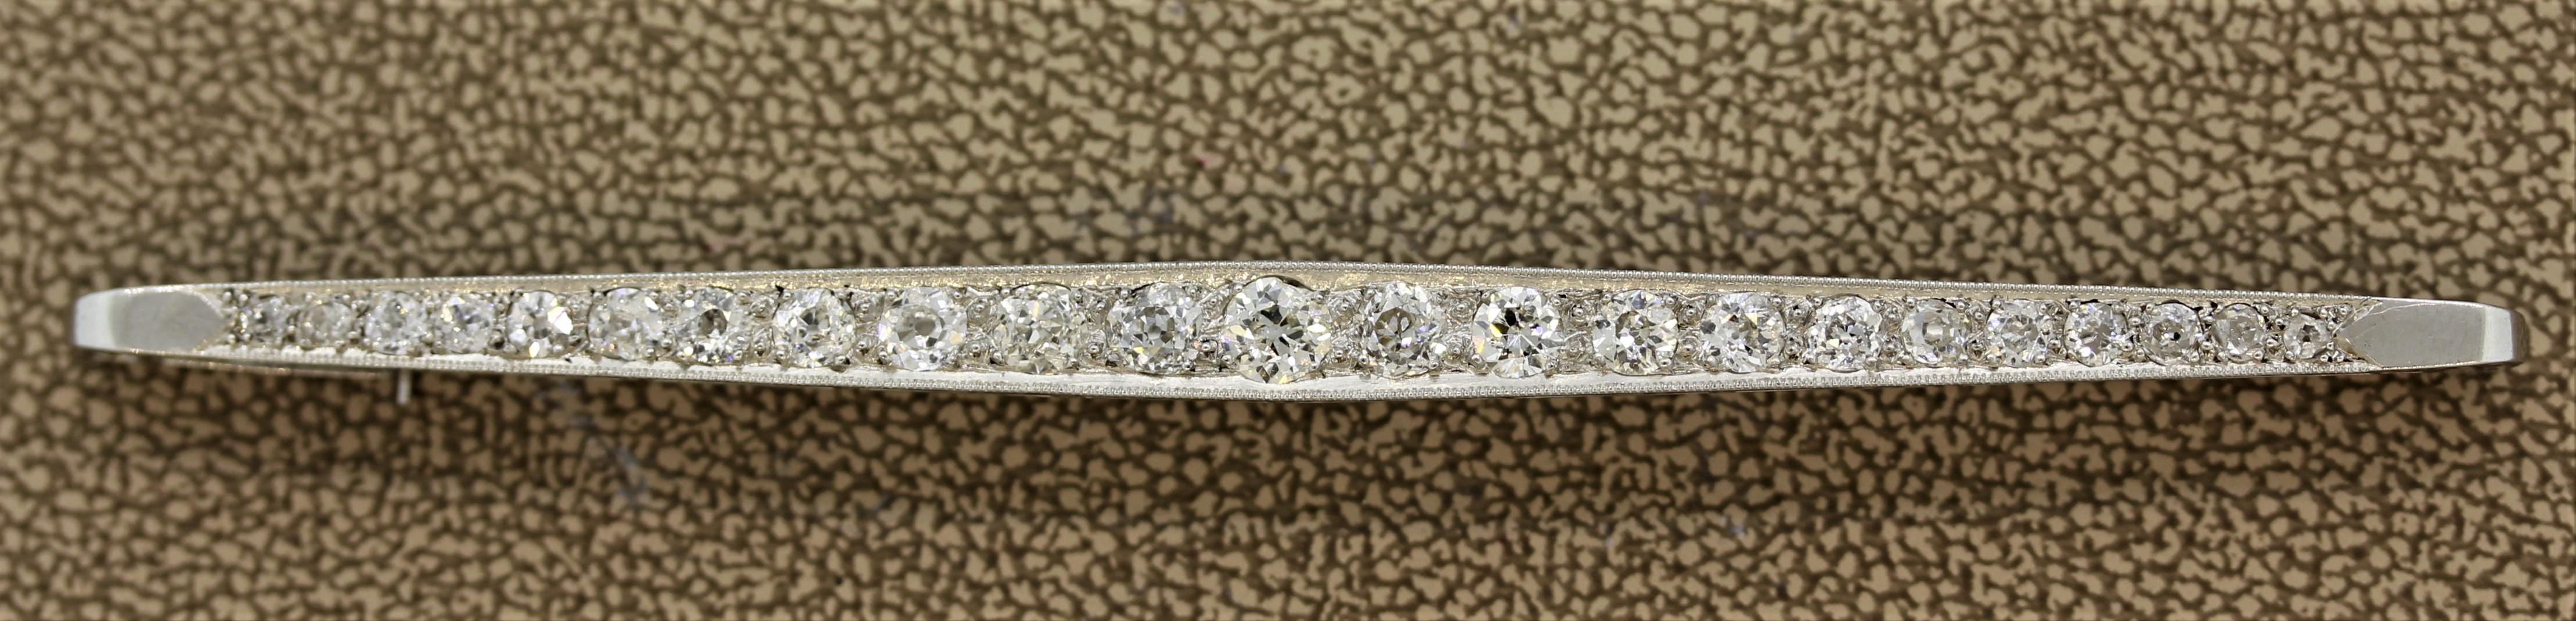 Pièce classique du début des années 1900, ce trésor édouardien comporte environ 2 carats de diamants taille ancienne. Sertie dans une longue barre de platine, cette pièce est encore en état d'origine.

Longueur : 3,5 pouces